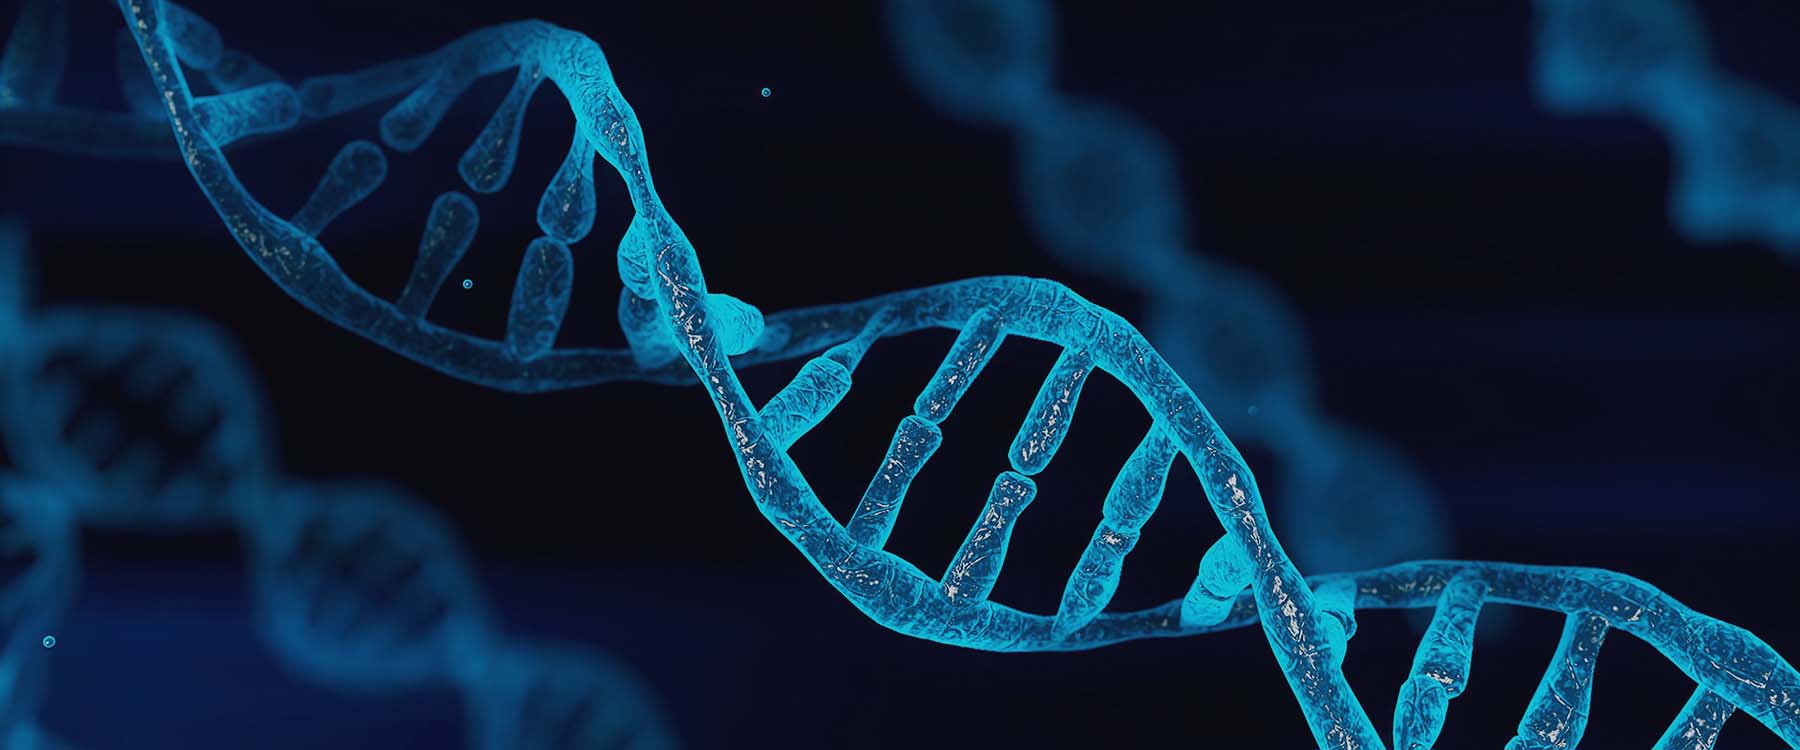 3D illustration of a DNA strand 